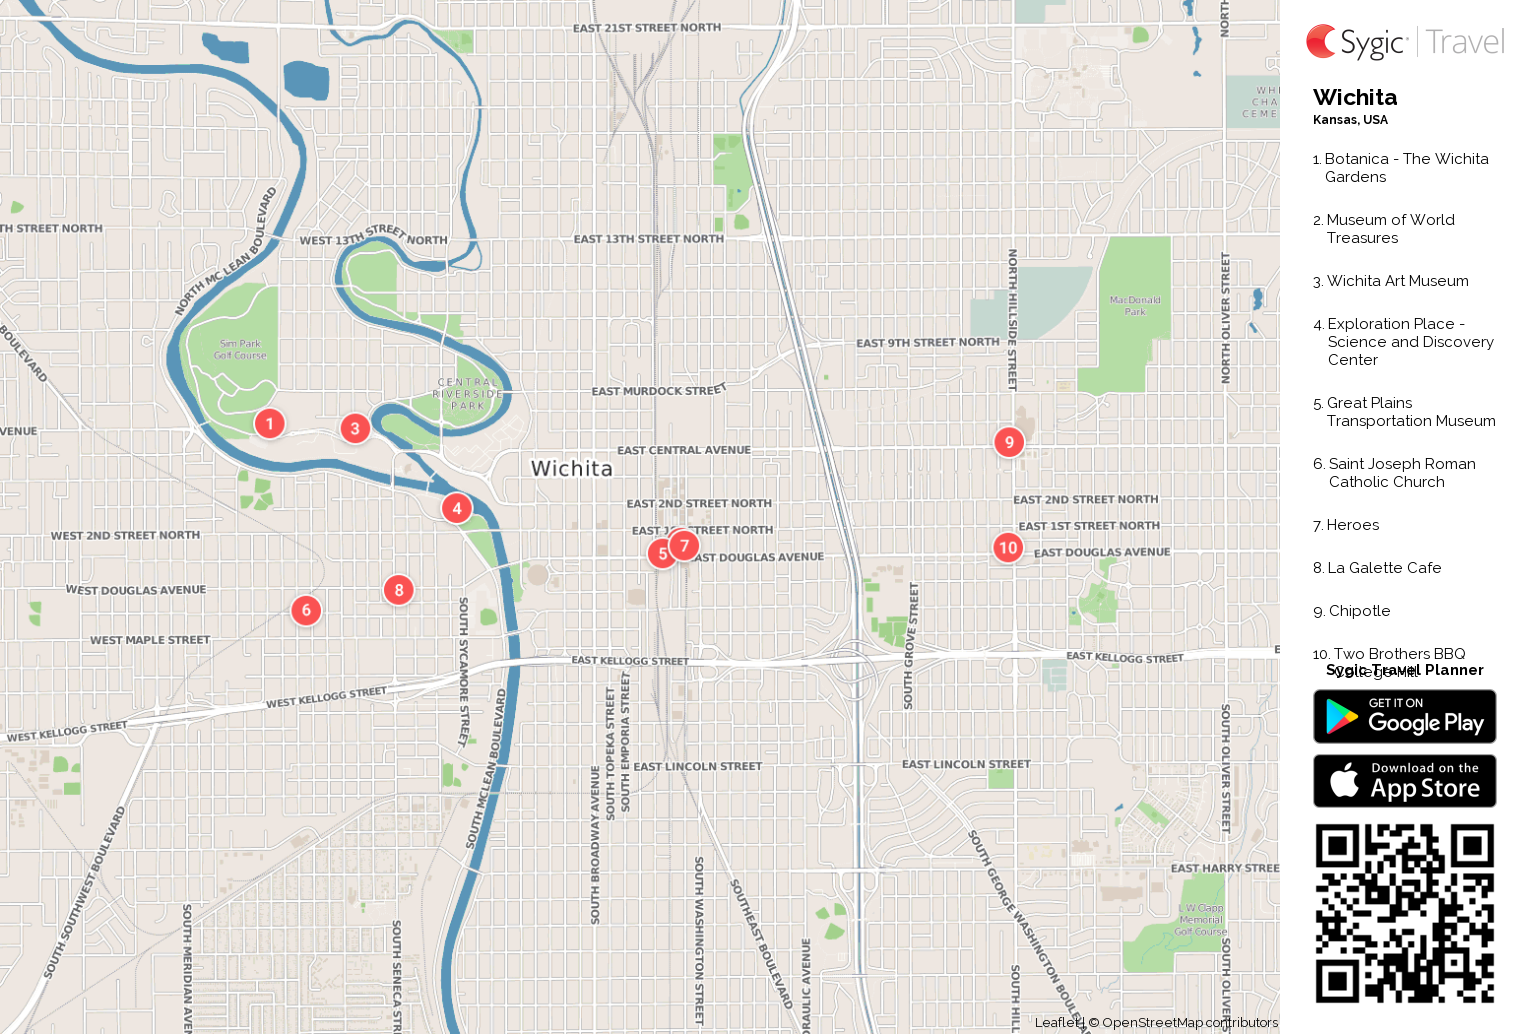 Wichita Printable Tourist Map Sygic Travel